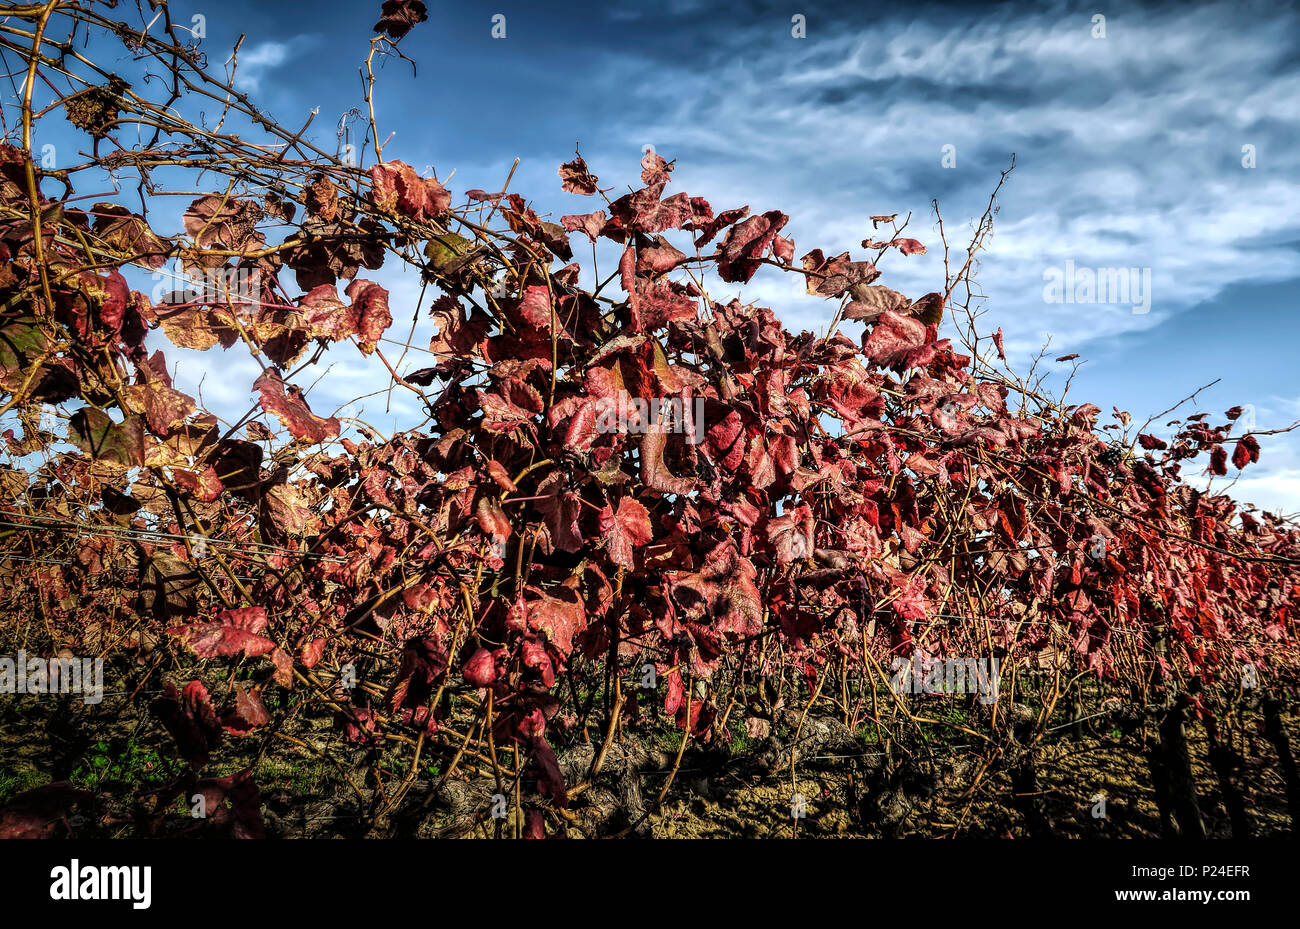 Vigne con foglie rosse in autunno Foto Stock